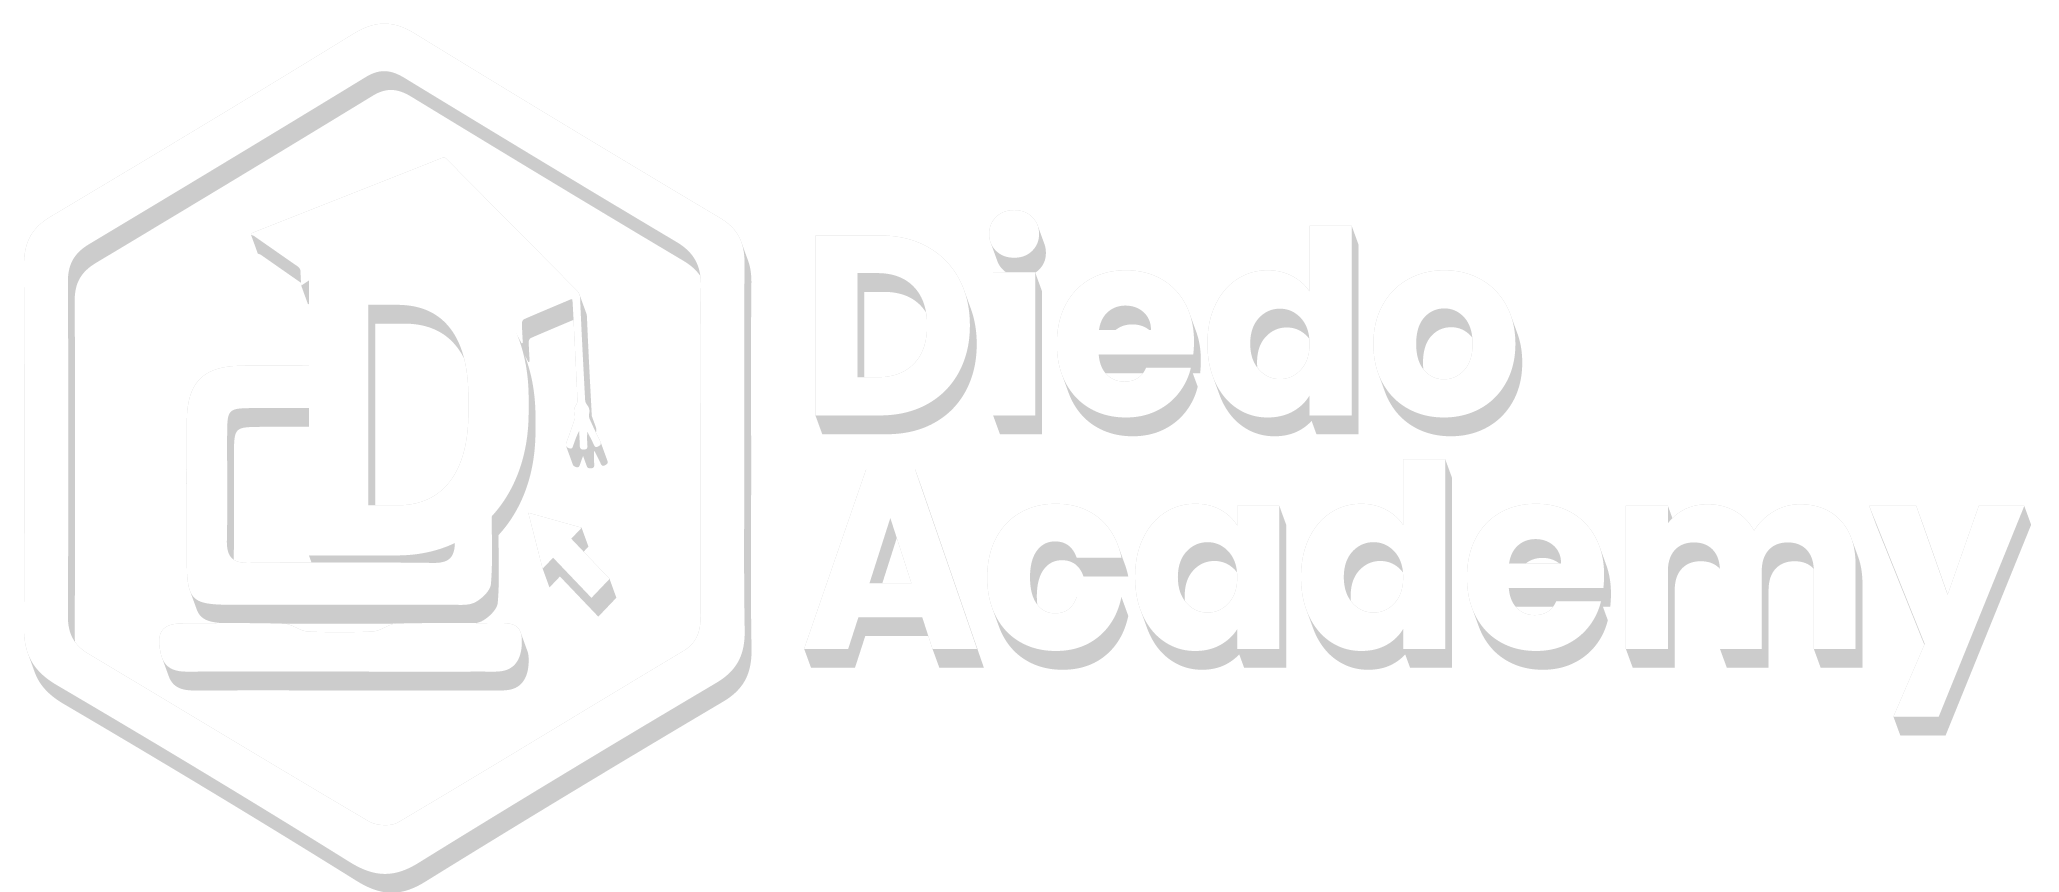 diedo academy white logo